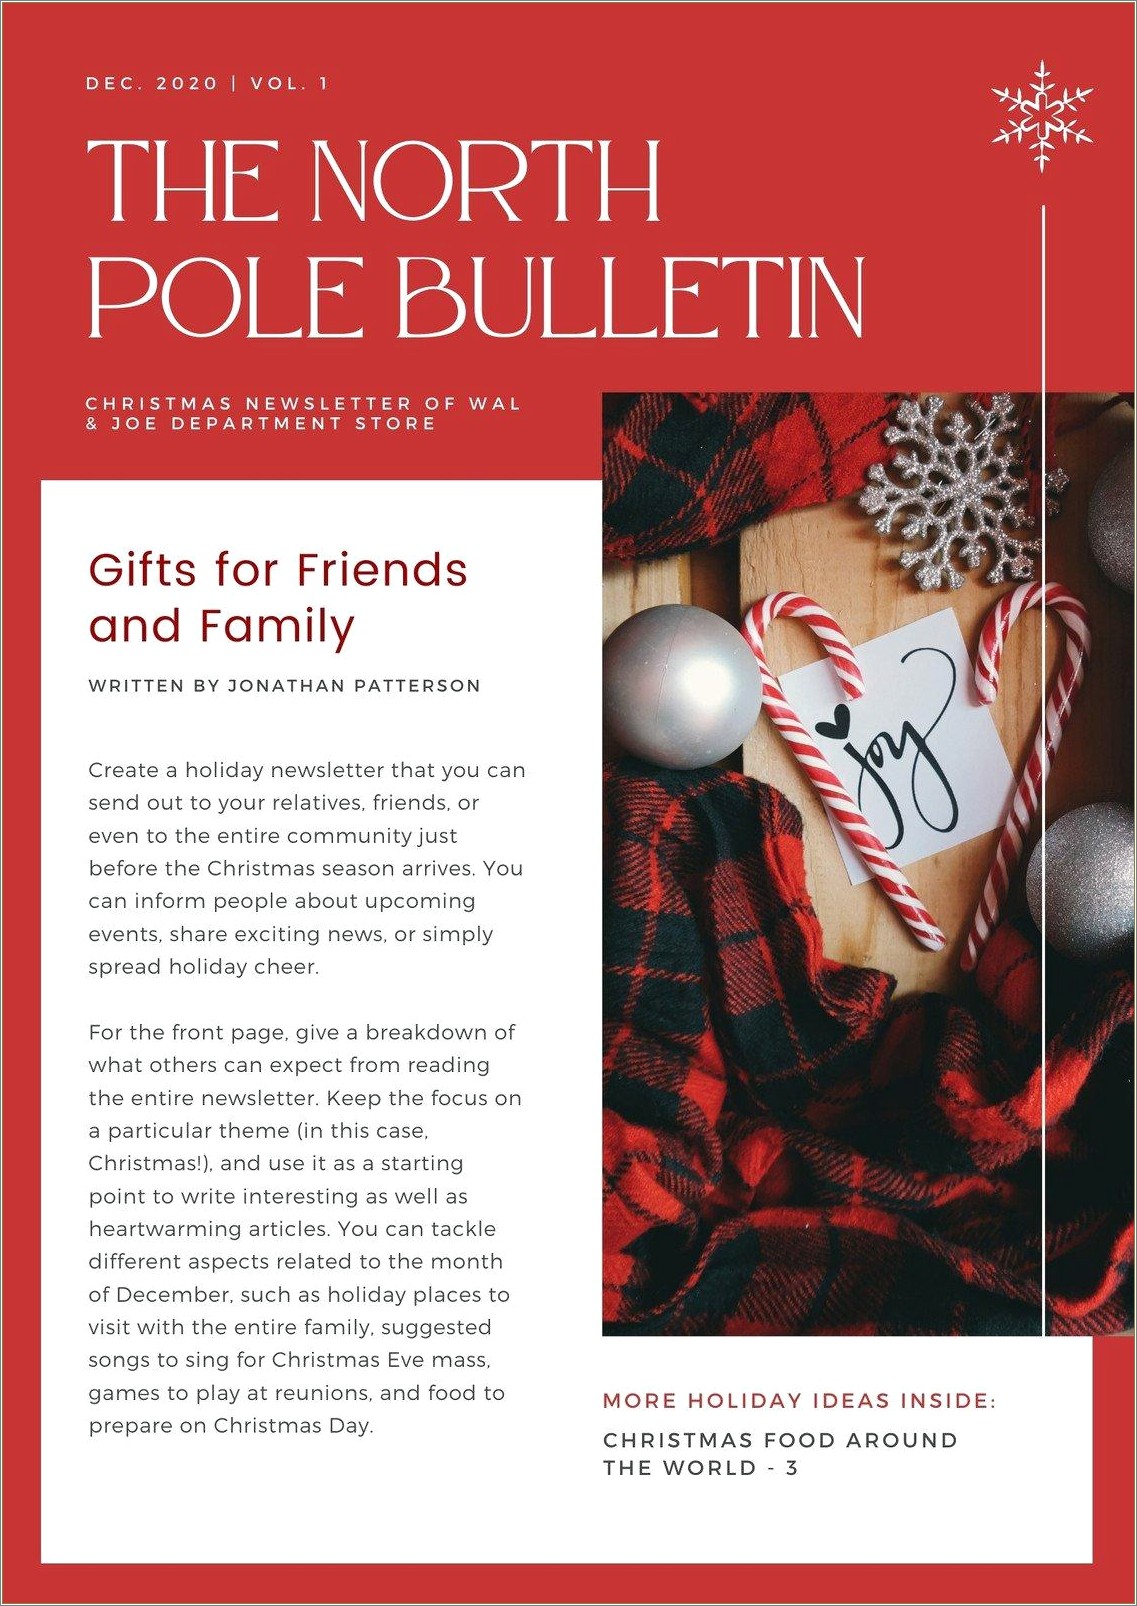 Free Christmas Newsletter Templates For Teachers